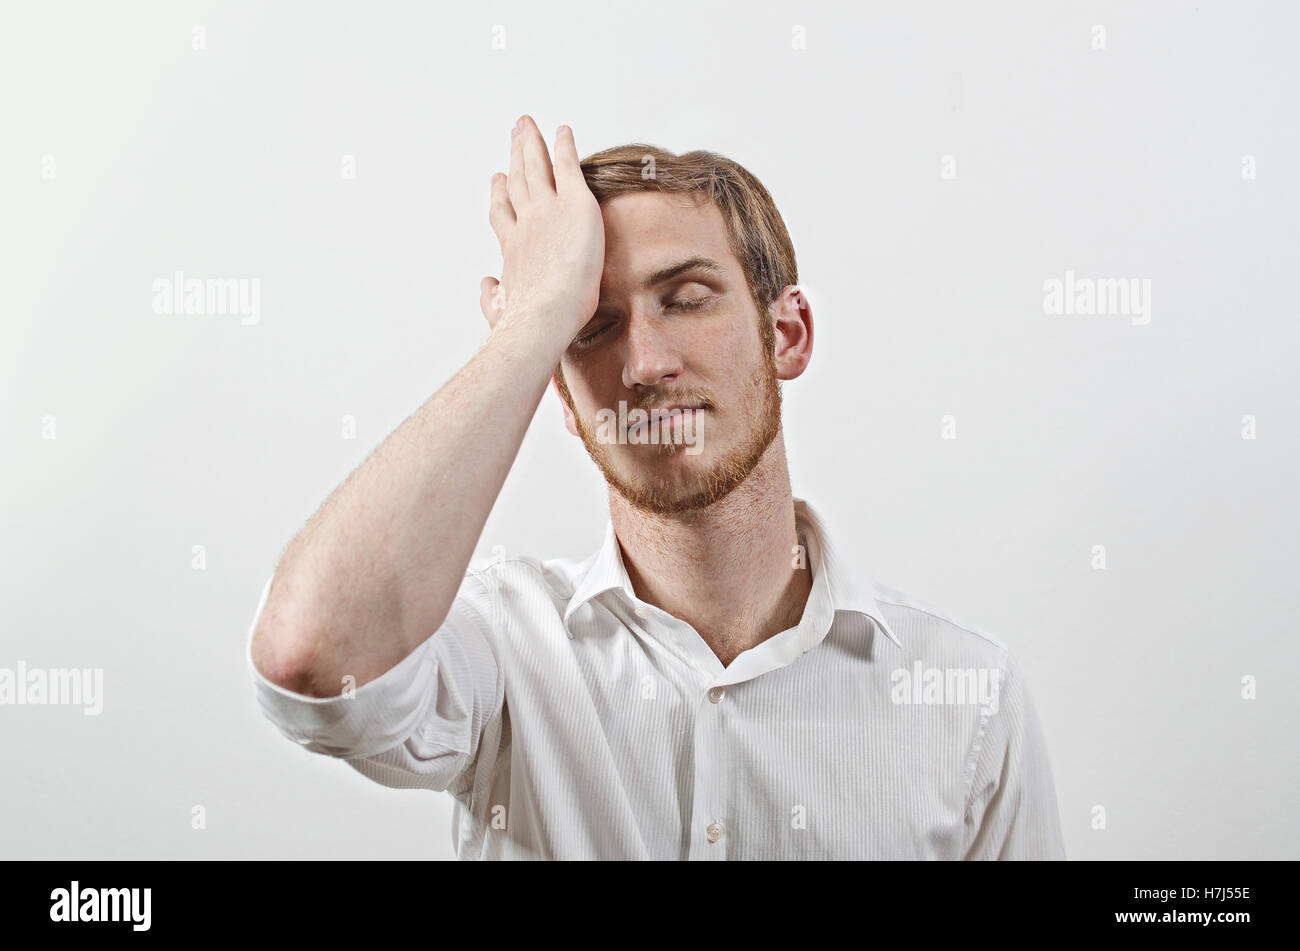 Les jeunes adultes de sexe masculin de porter une chemise blanche aux gestes qu'il a fait une grosse erreur Banque D'Images